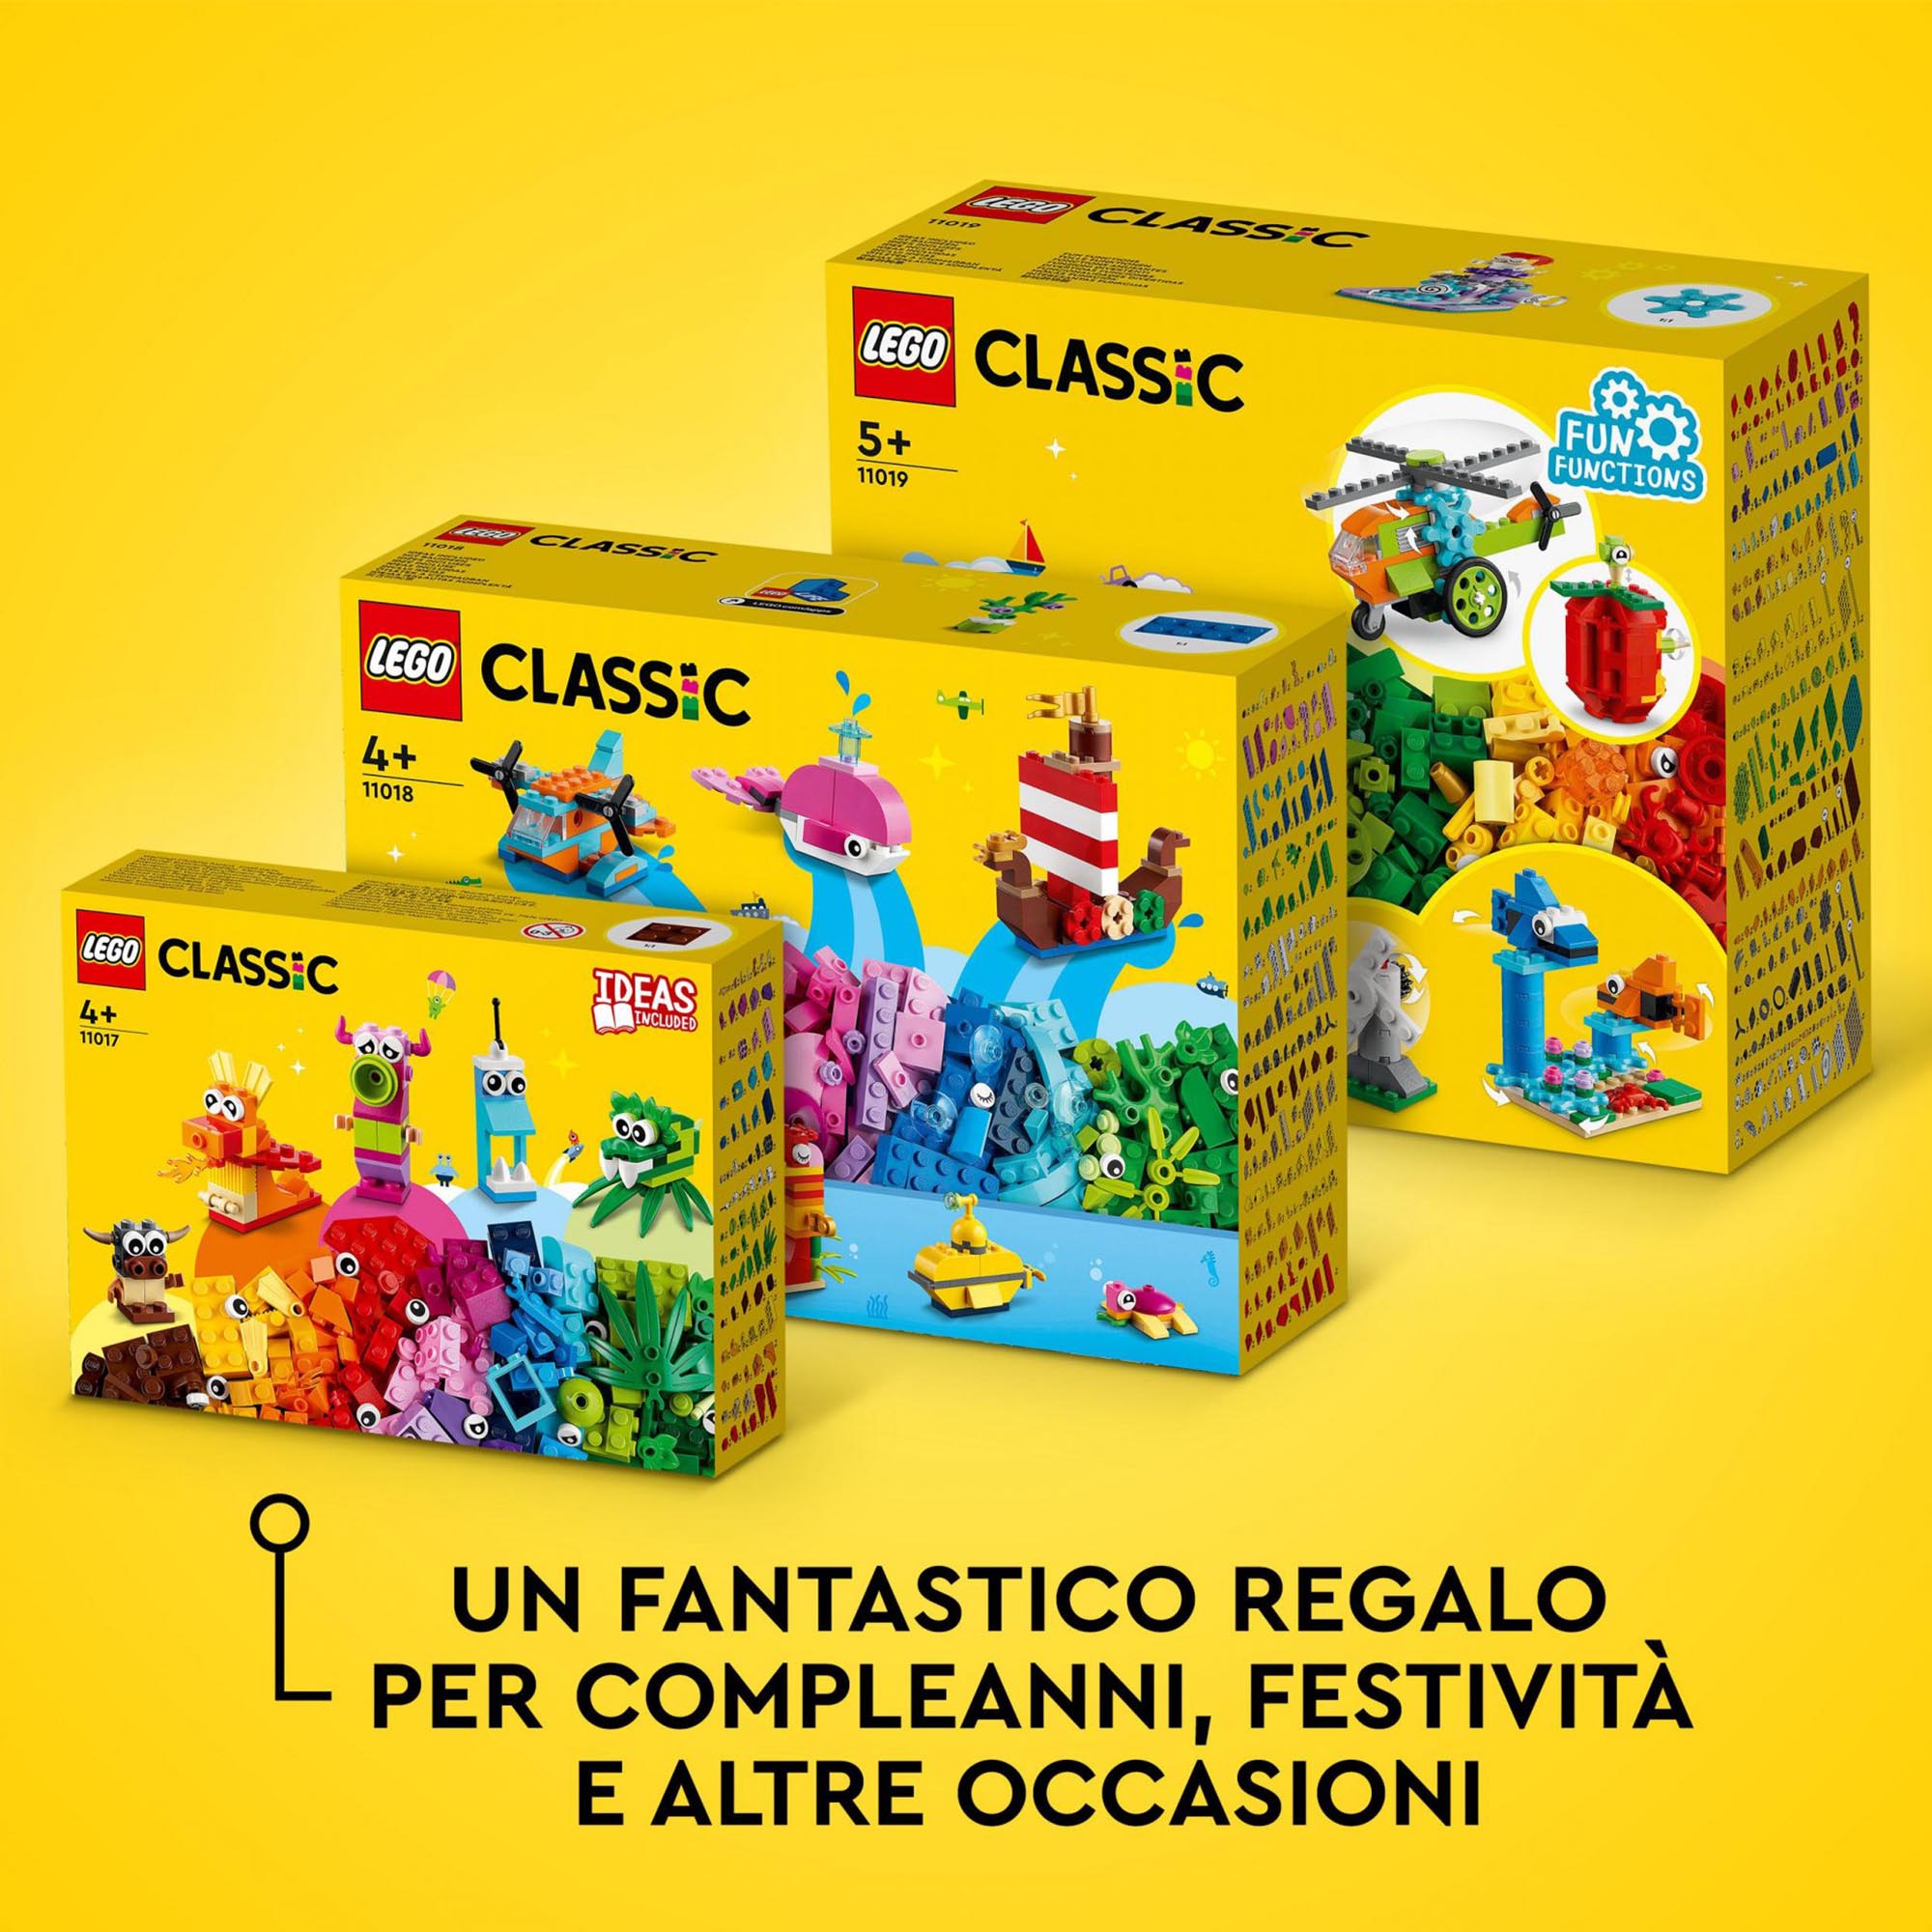 LEGO 11019 Classic Mattoncini e Funzioni, Giocattoli Creativi, 7 Mini Costruzion 11019, , large